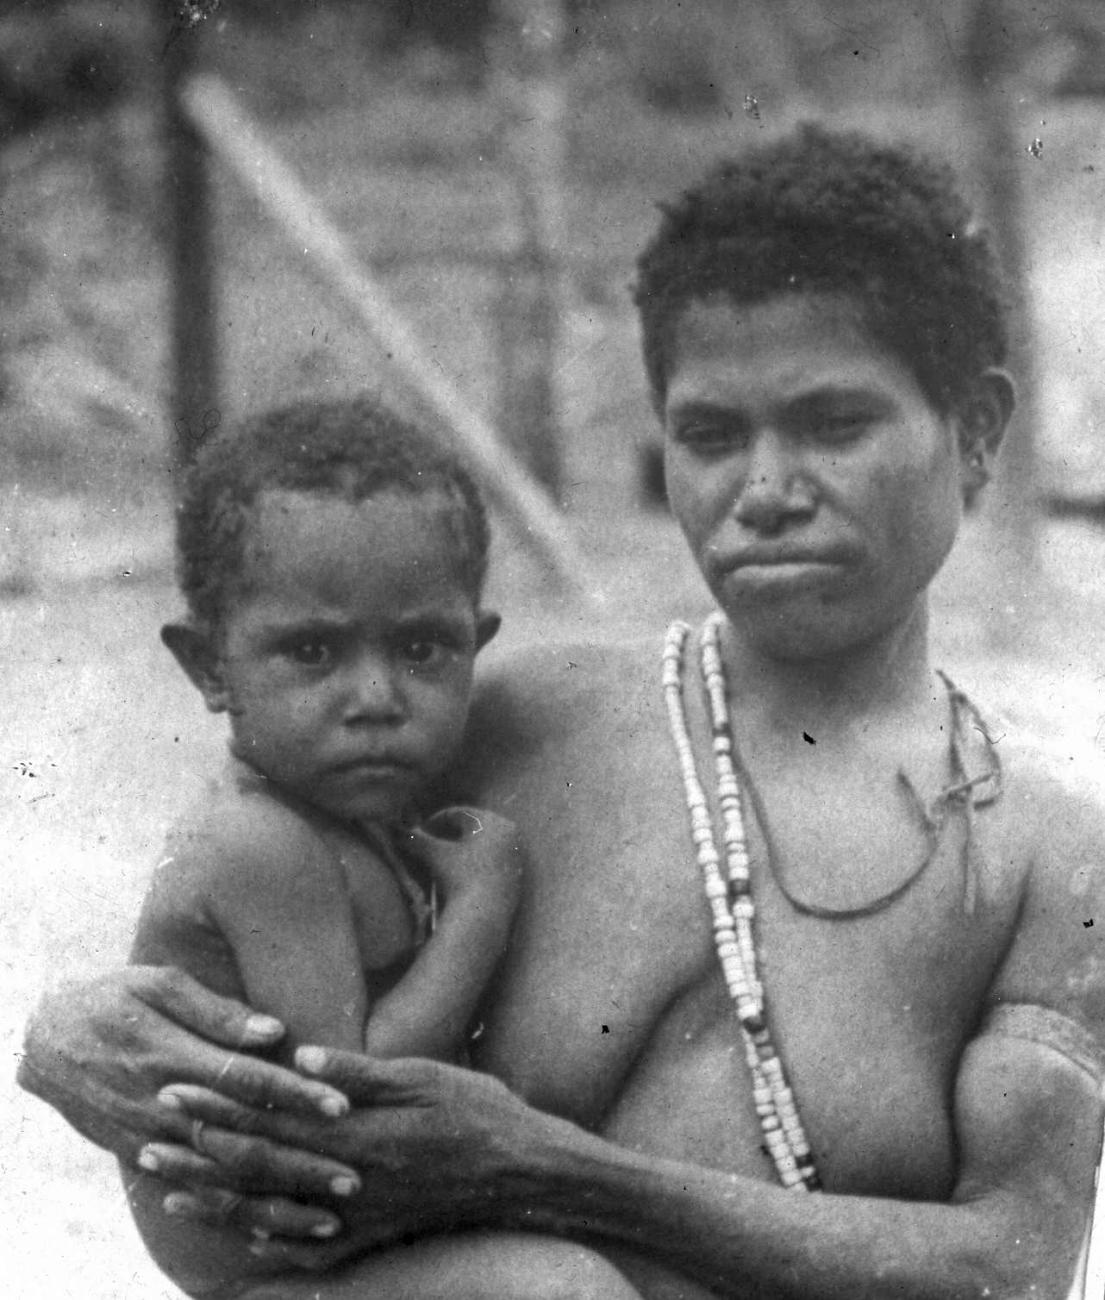 BD/66/449 - 
Portret van een Papoea-vrouw met haar kind op de arm
